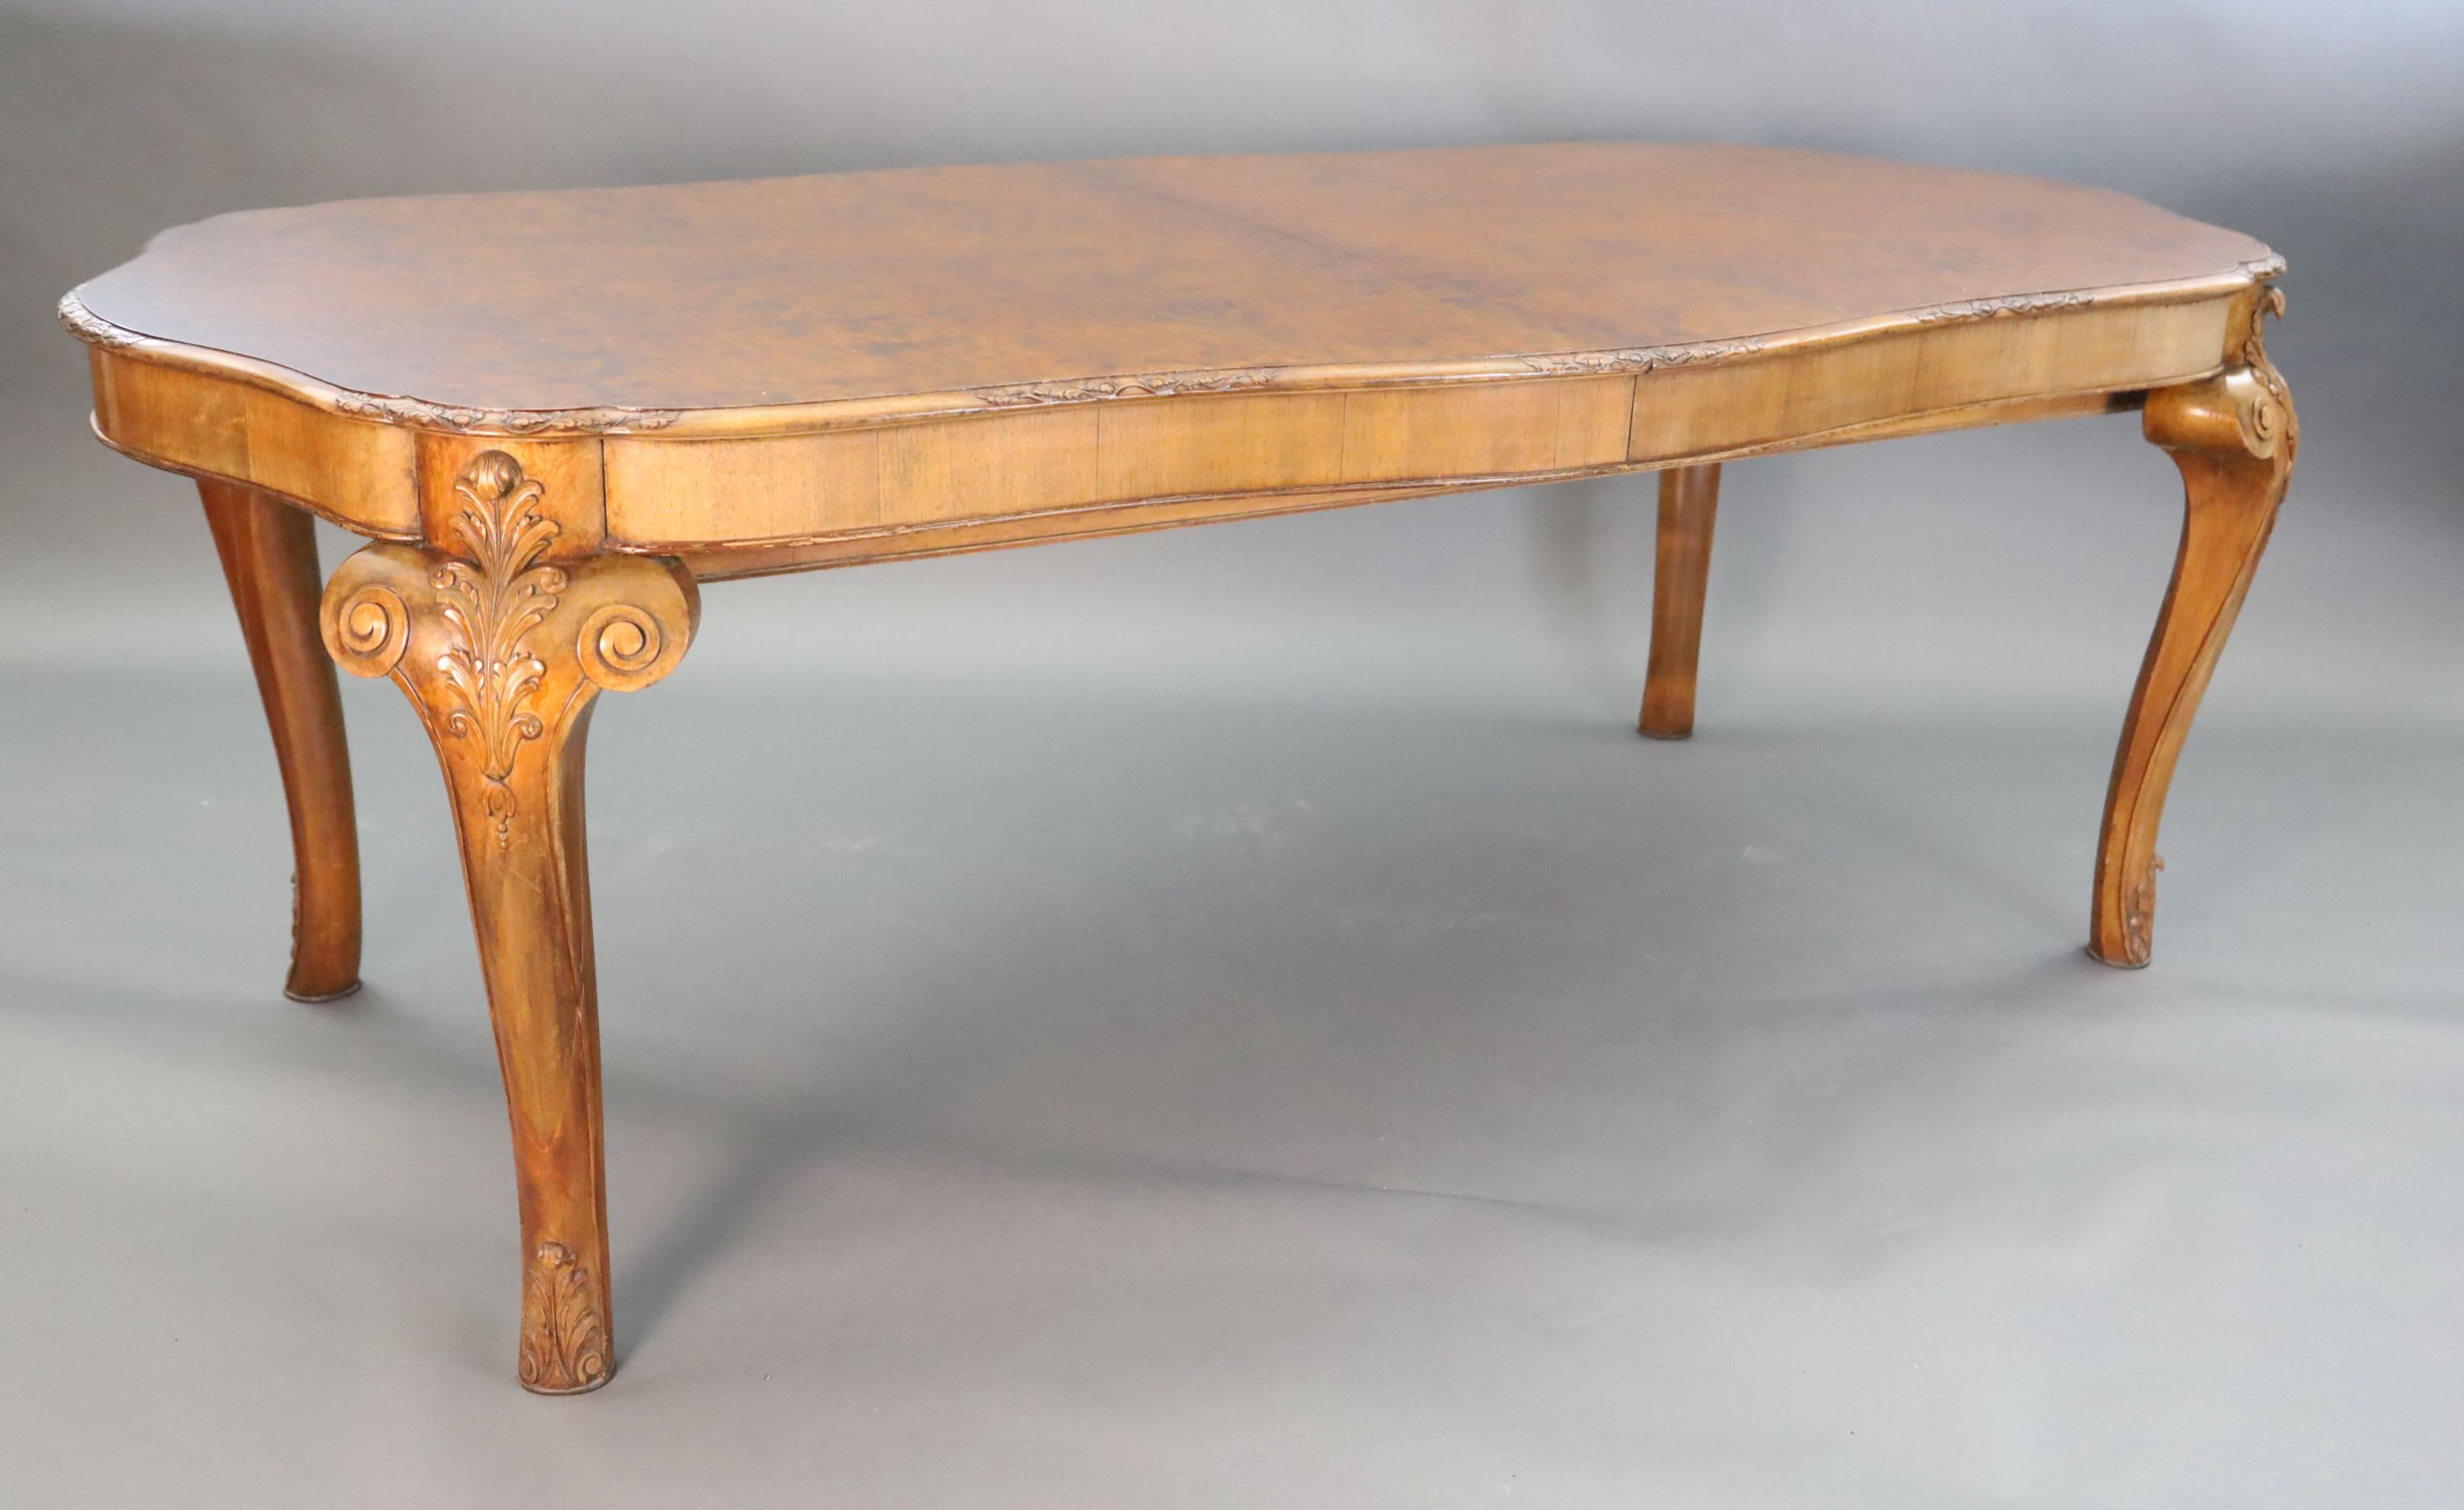 A Queen Anne style burr walnut extending dining table, W.3ft 5in. L.6ft 10in. extends to 8ft 10in. H.2ft 6in.